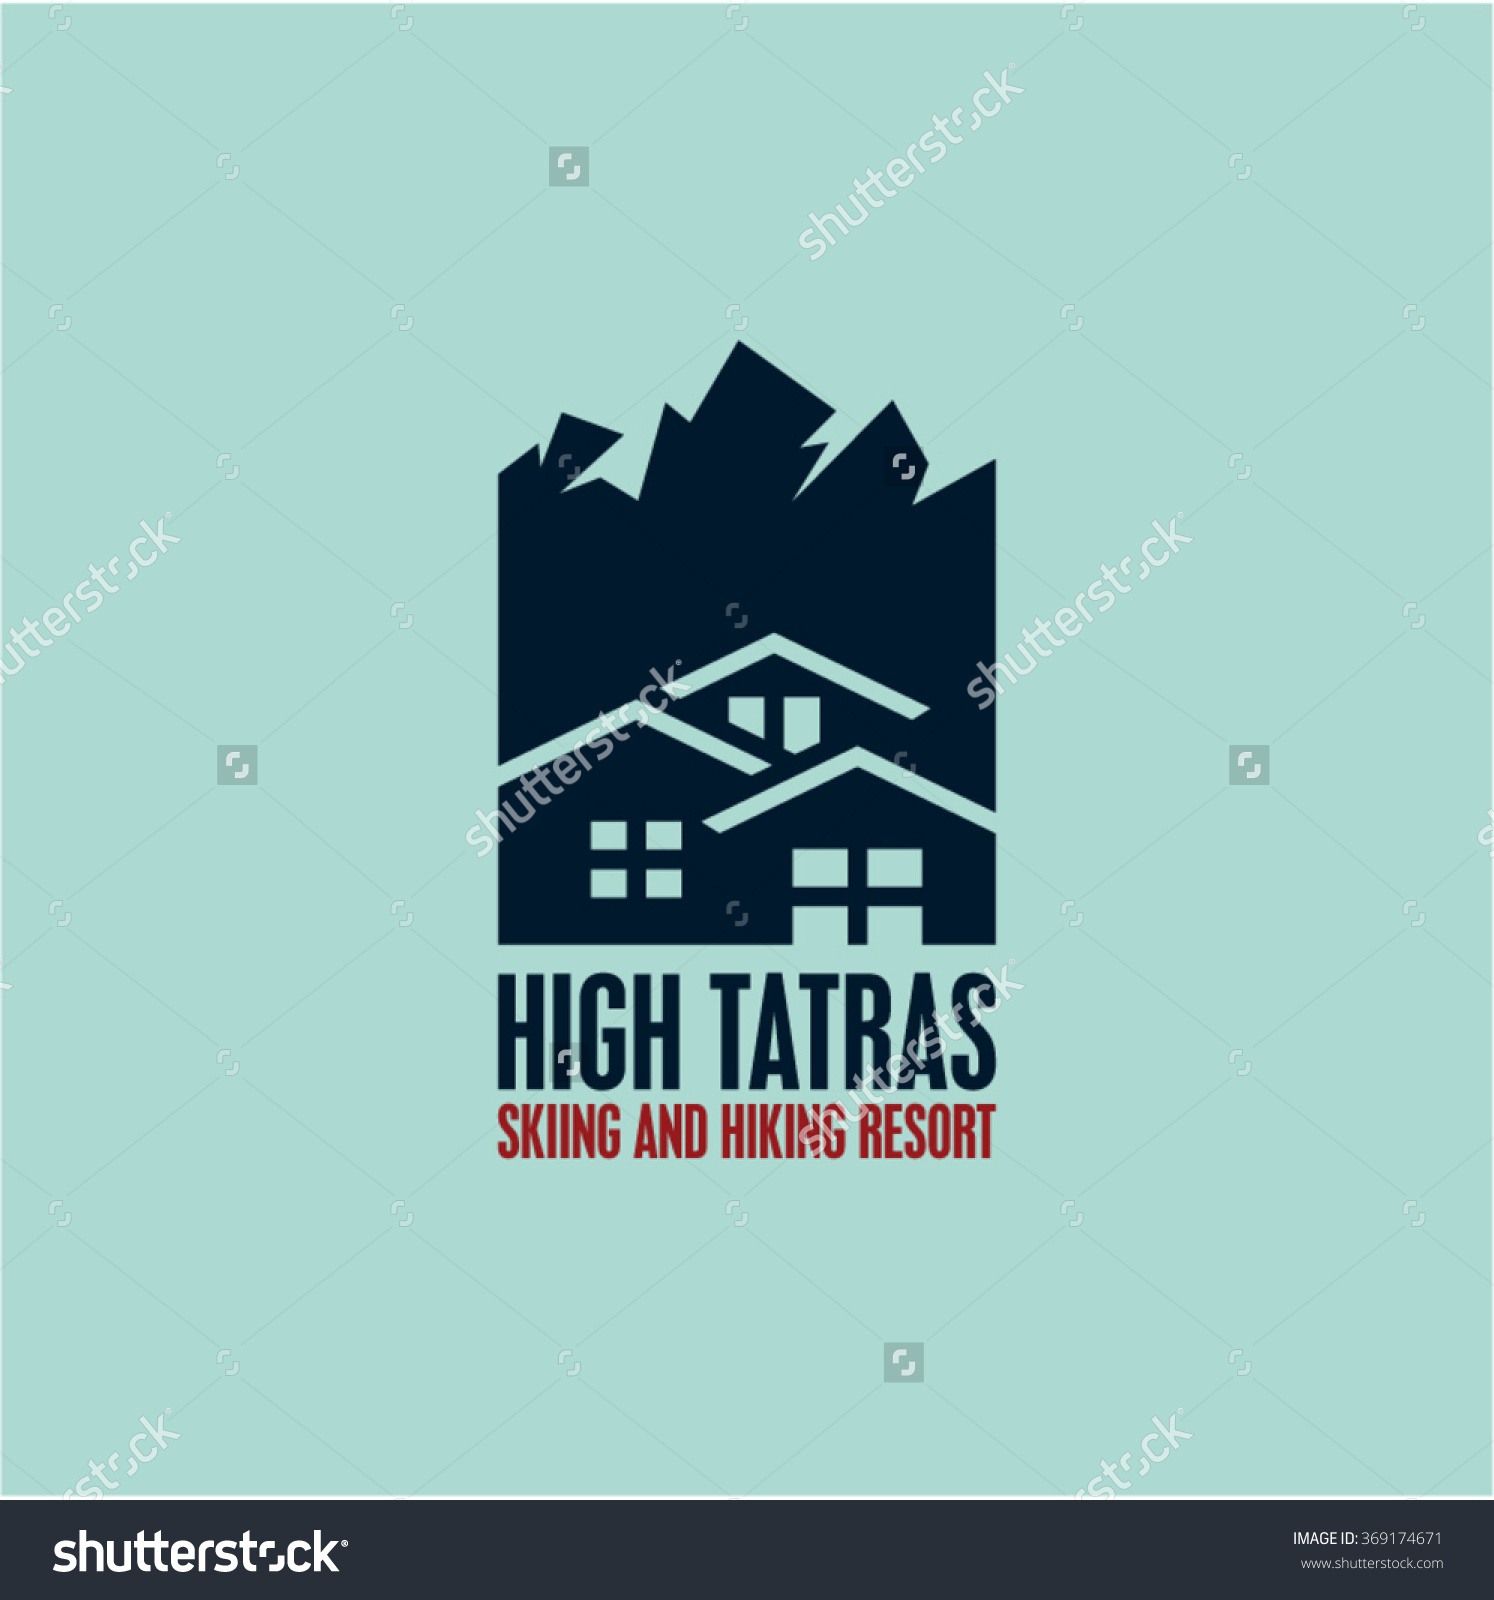 High Tatras Stock Vectors & Vector Clip Art.